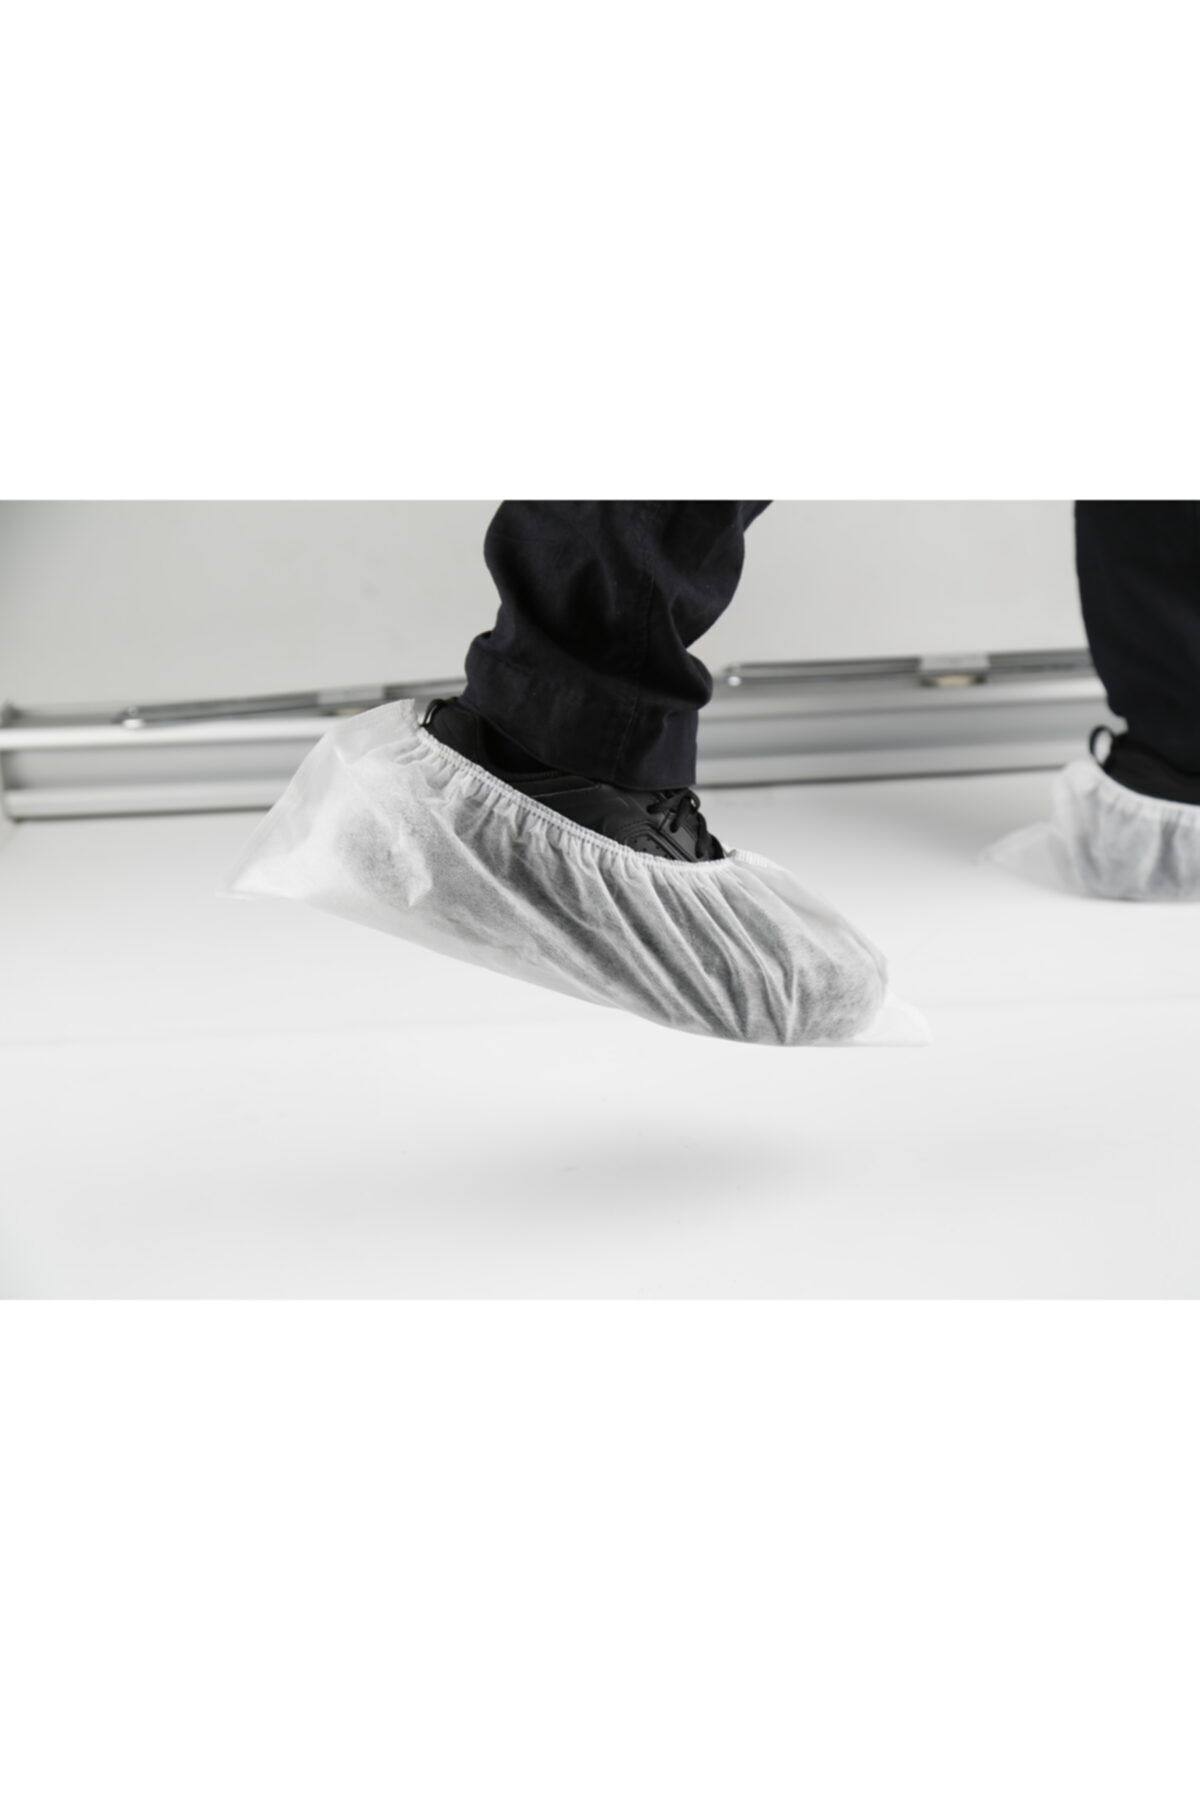 Brben Tekstil Tek Kullanımlık Tela Ayakkabı Galoş-beyaz(WHİTE) -100 Adet-brmed Tekstil